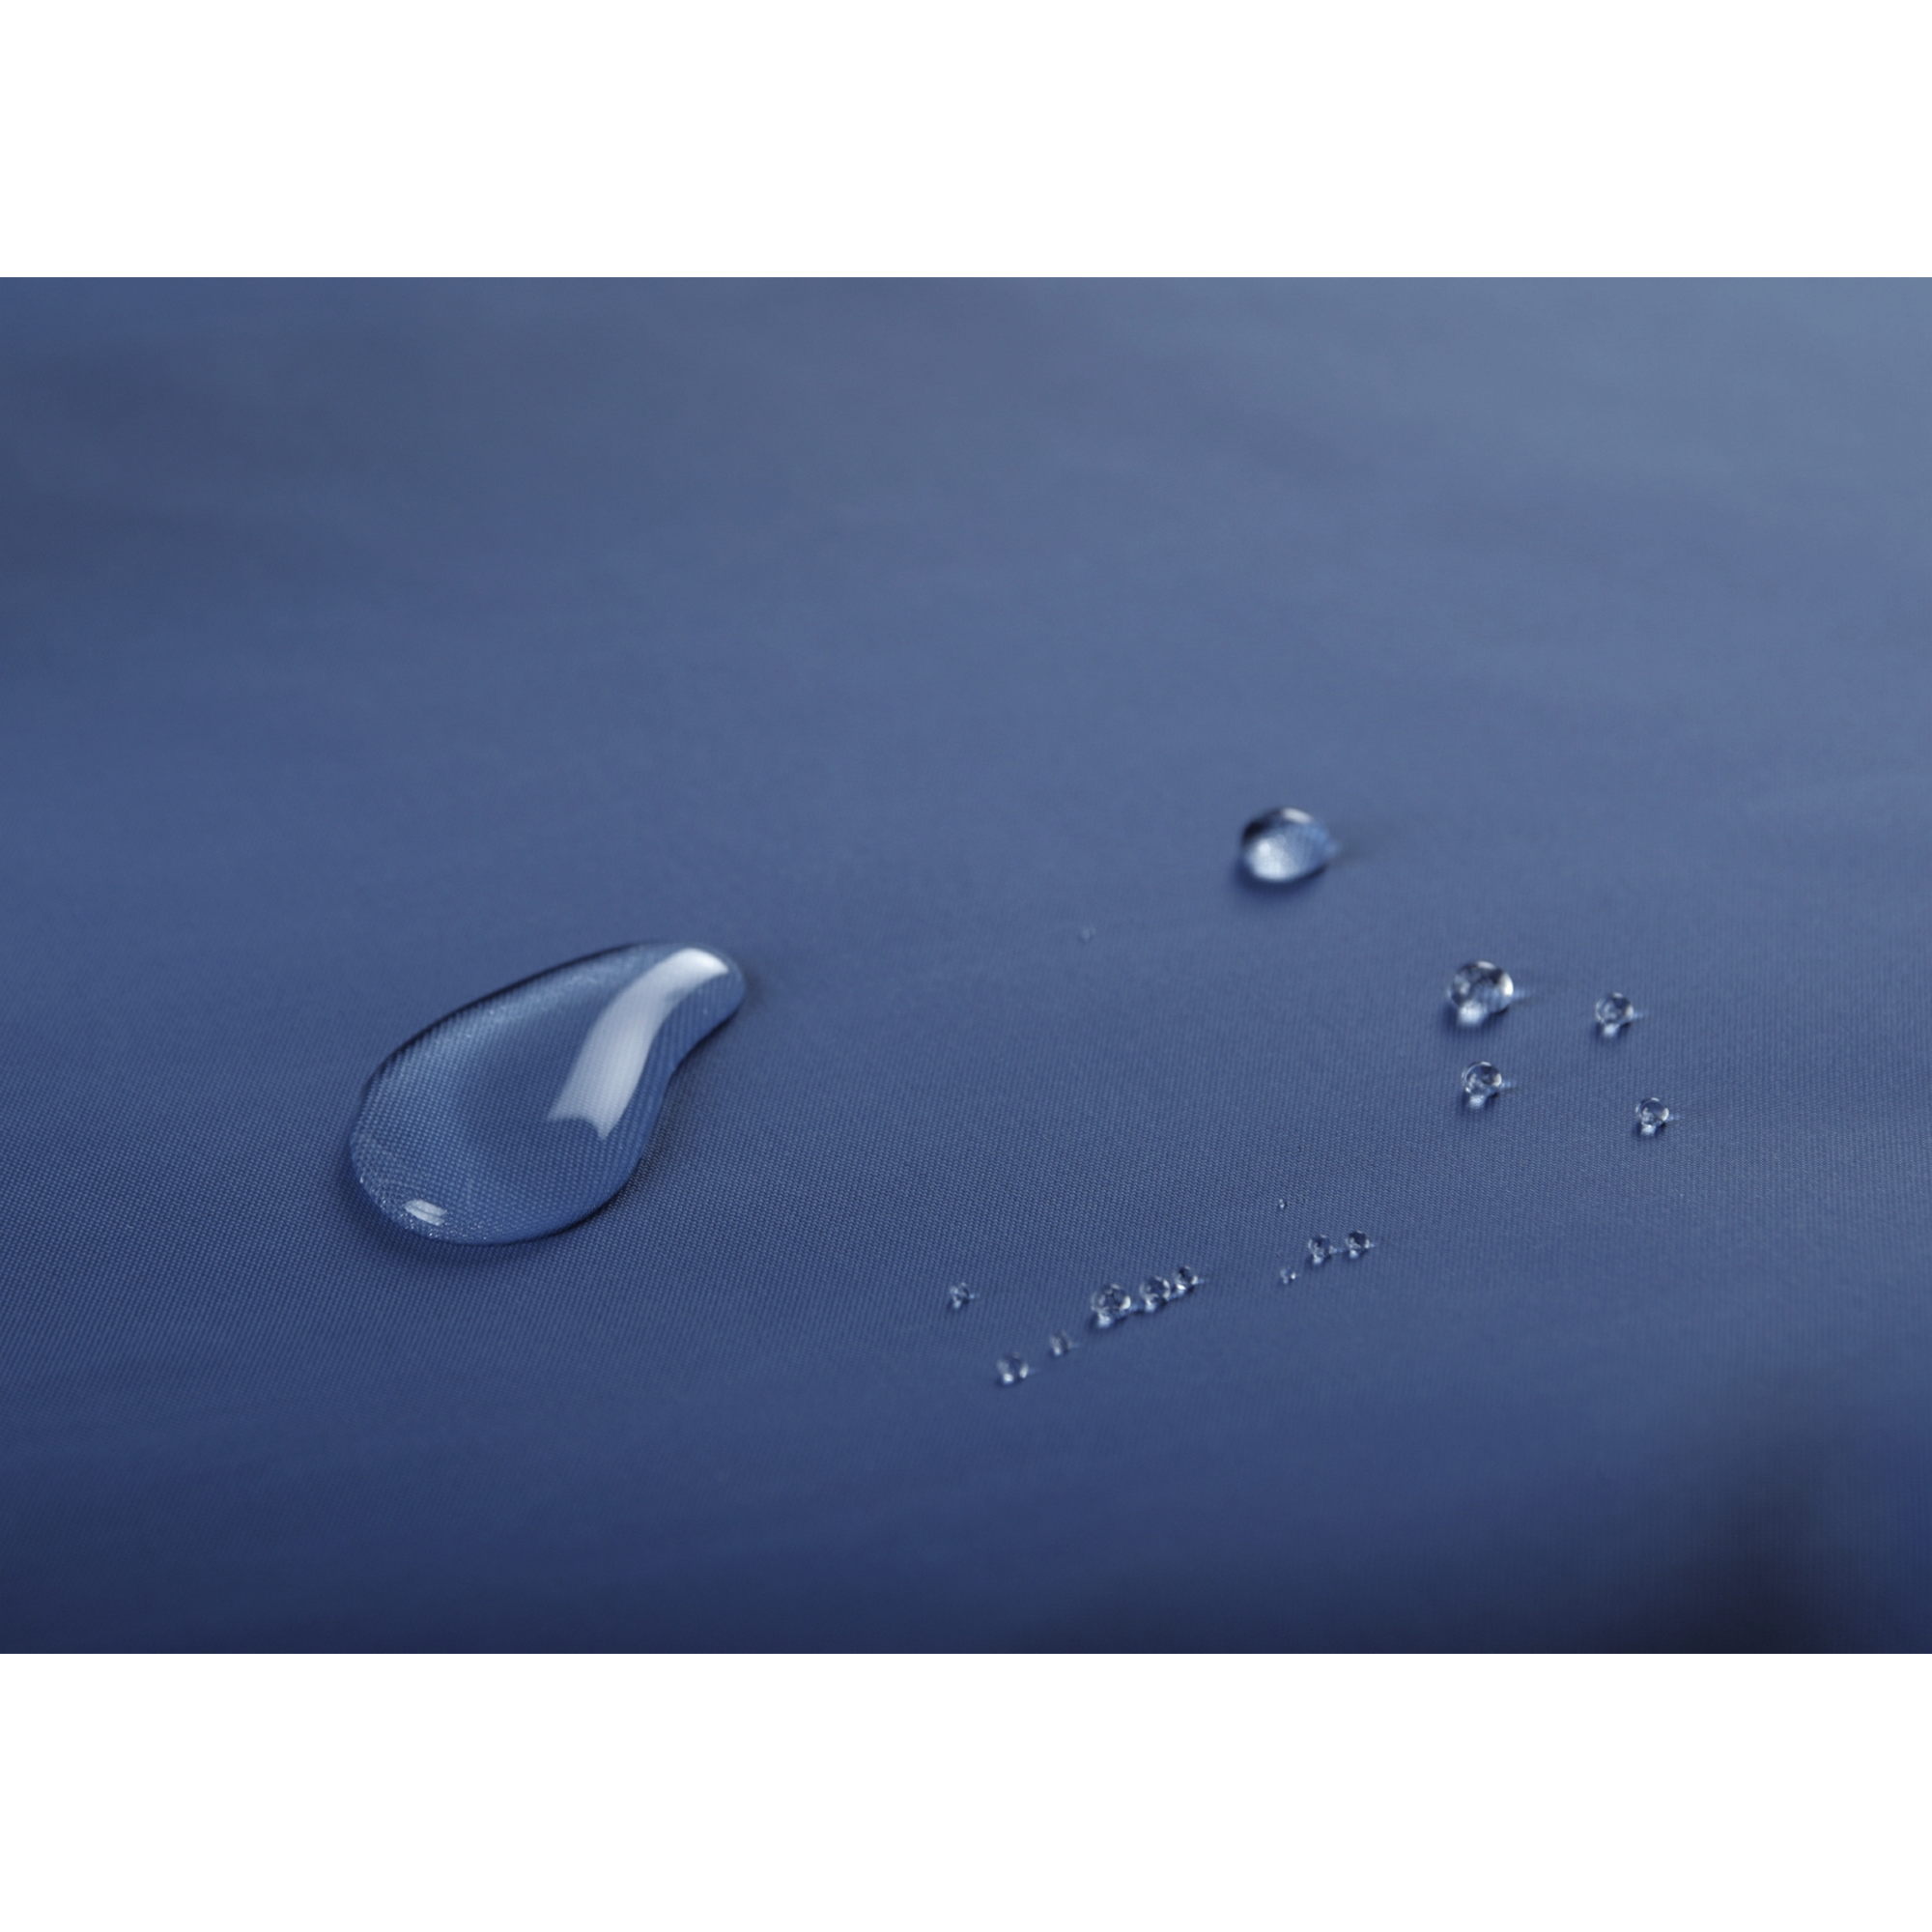 Duschvorhang 'Embosa' Textil dunkelblau 180 x 200 cm + product picture